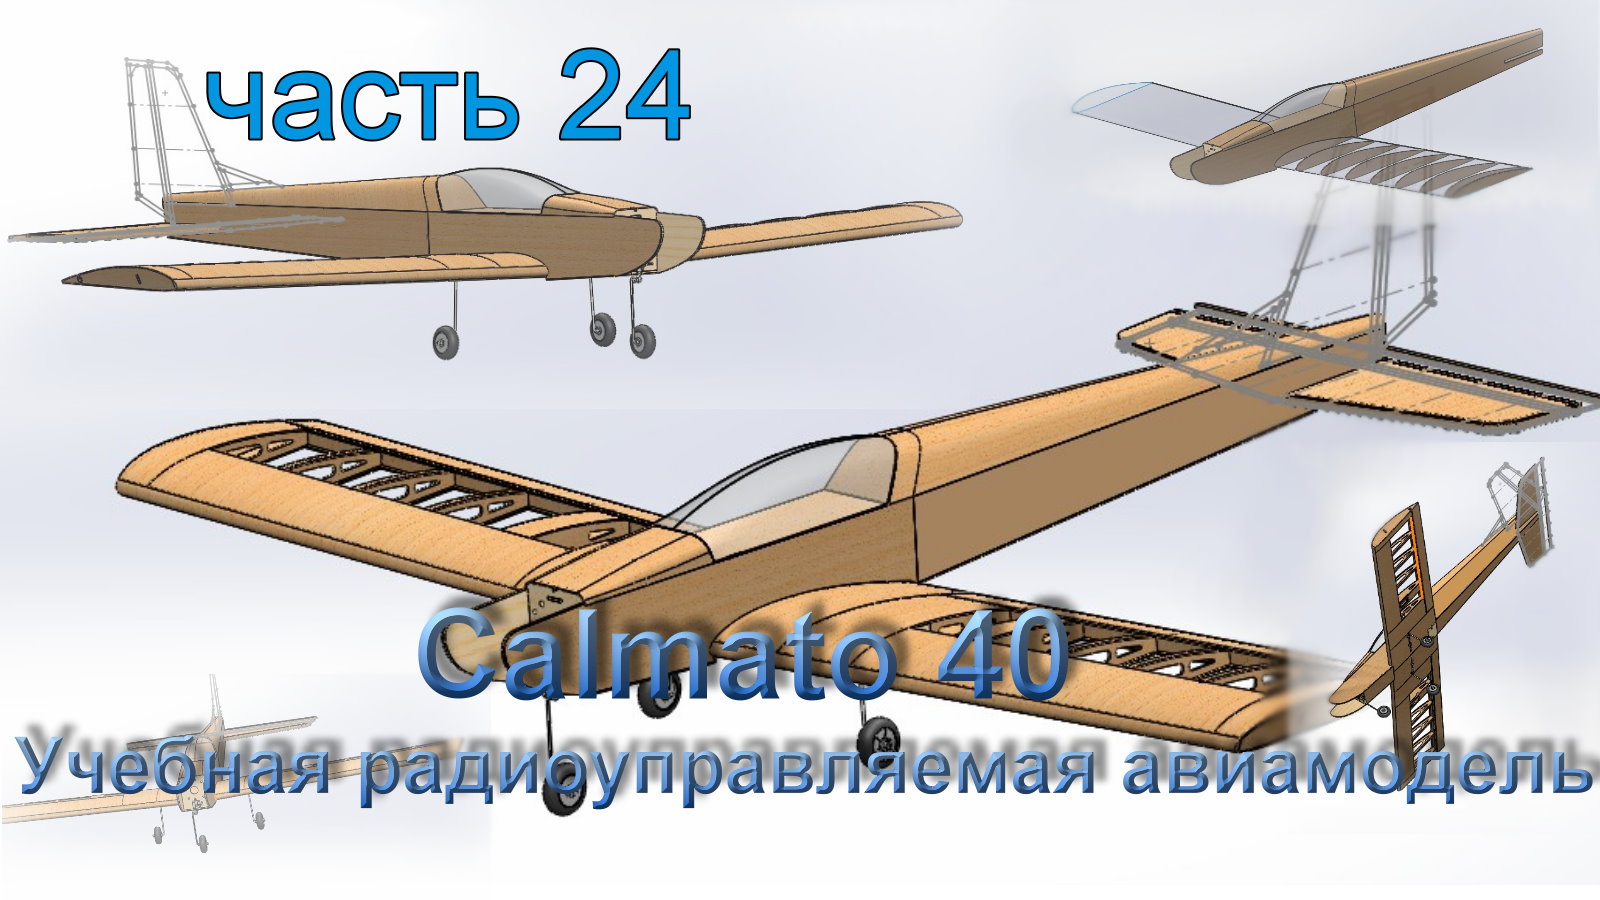 Учебная радиоуправляемая авиамодель Calmato 40 (часть 24)